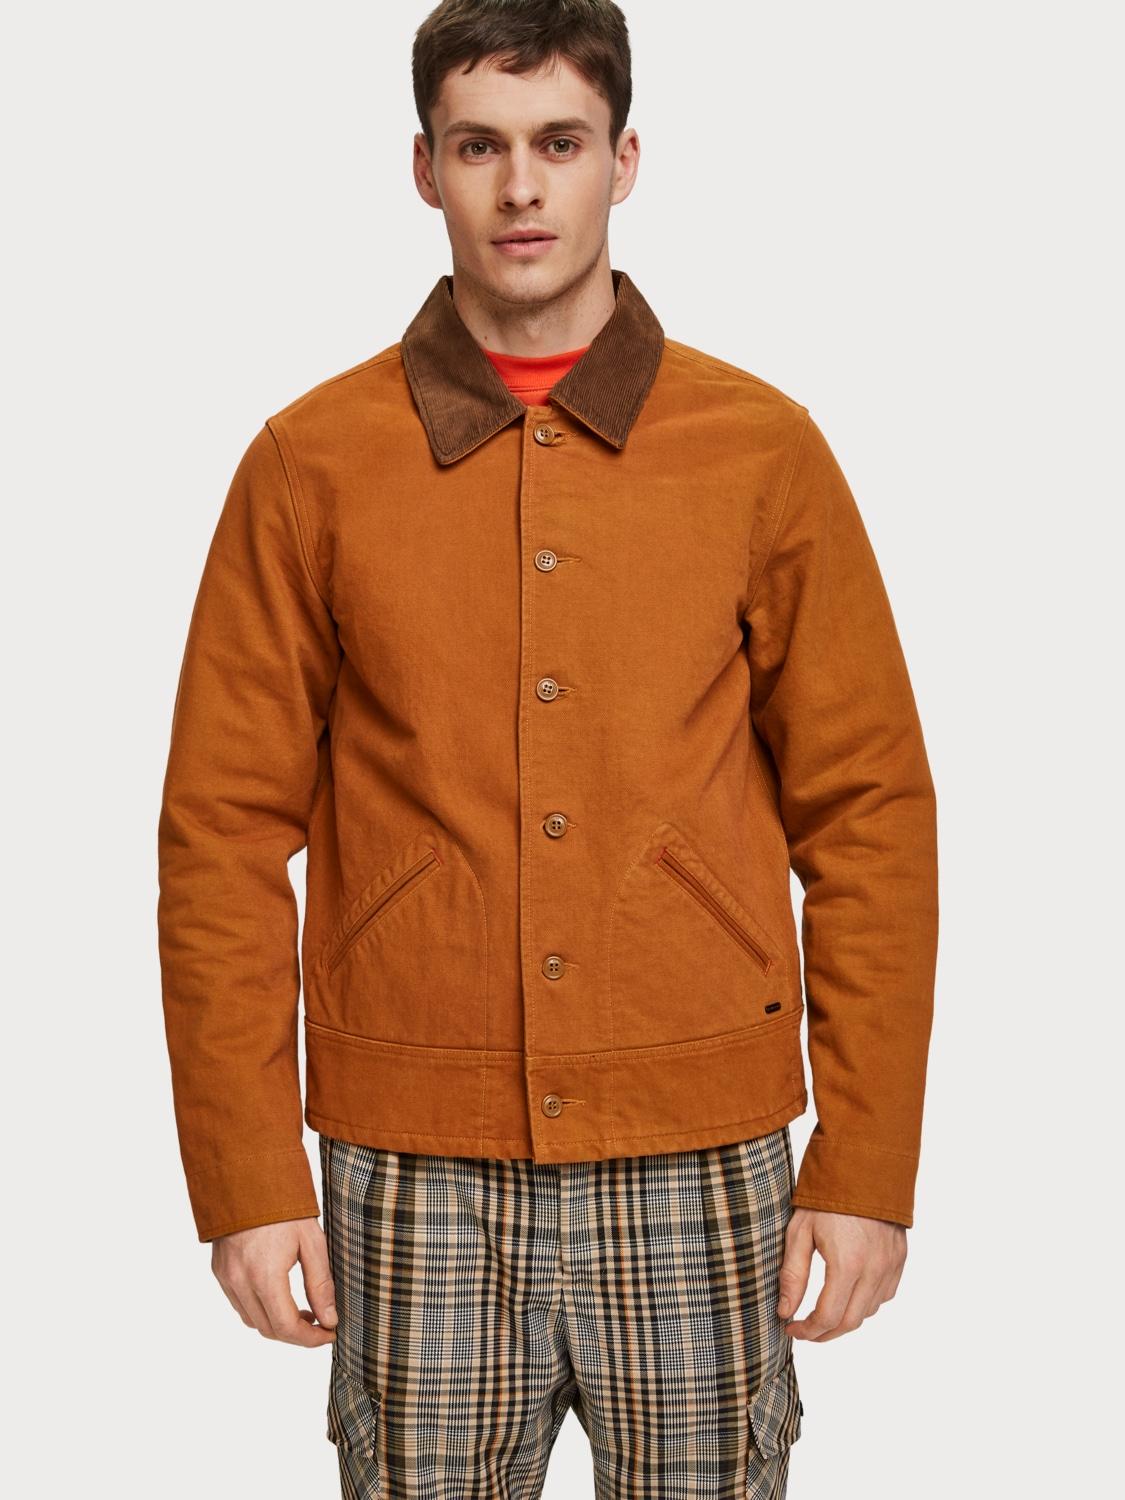 Scotch & Soda Cotton Moleskin Jacket in Brown for Men - Lyst